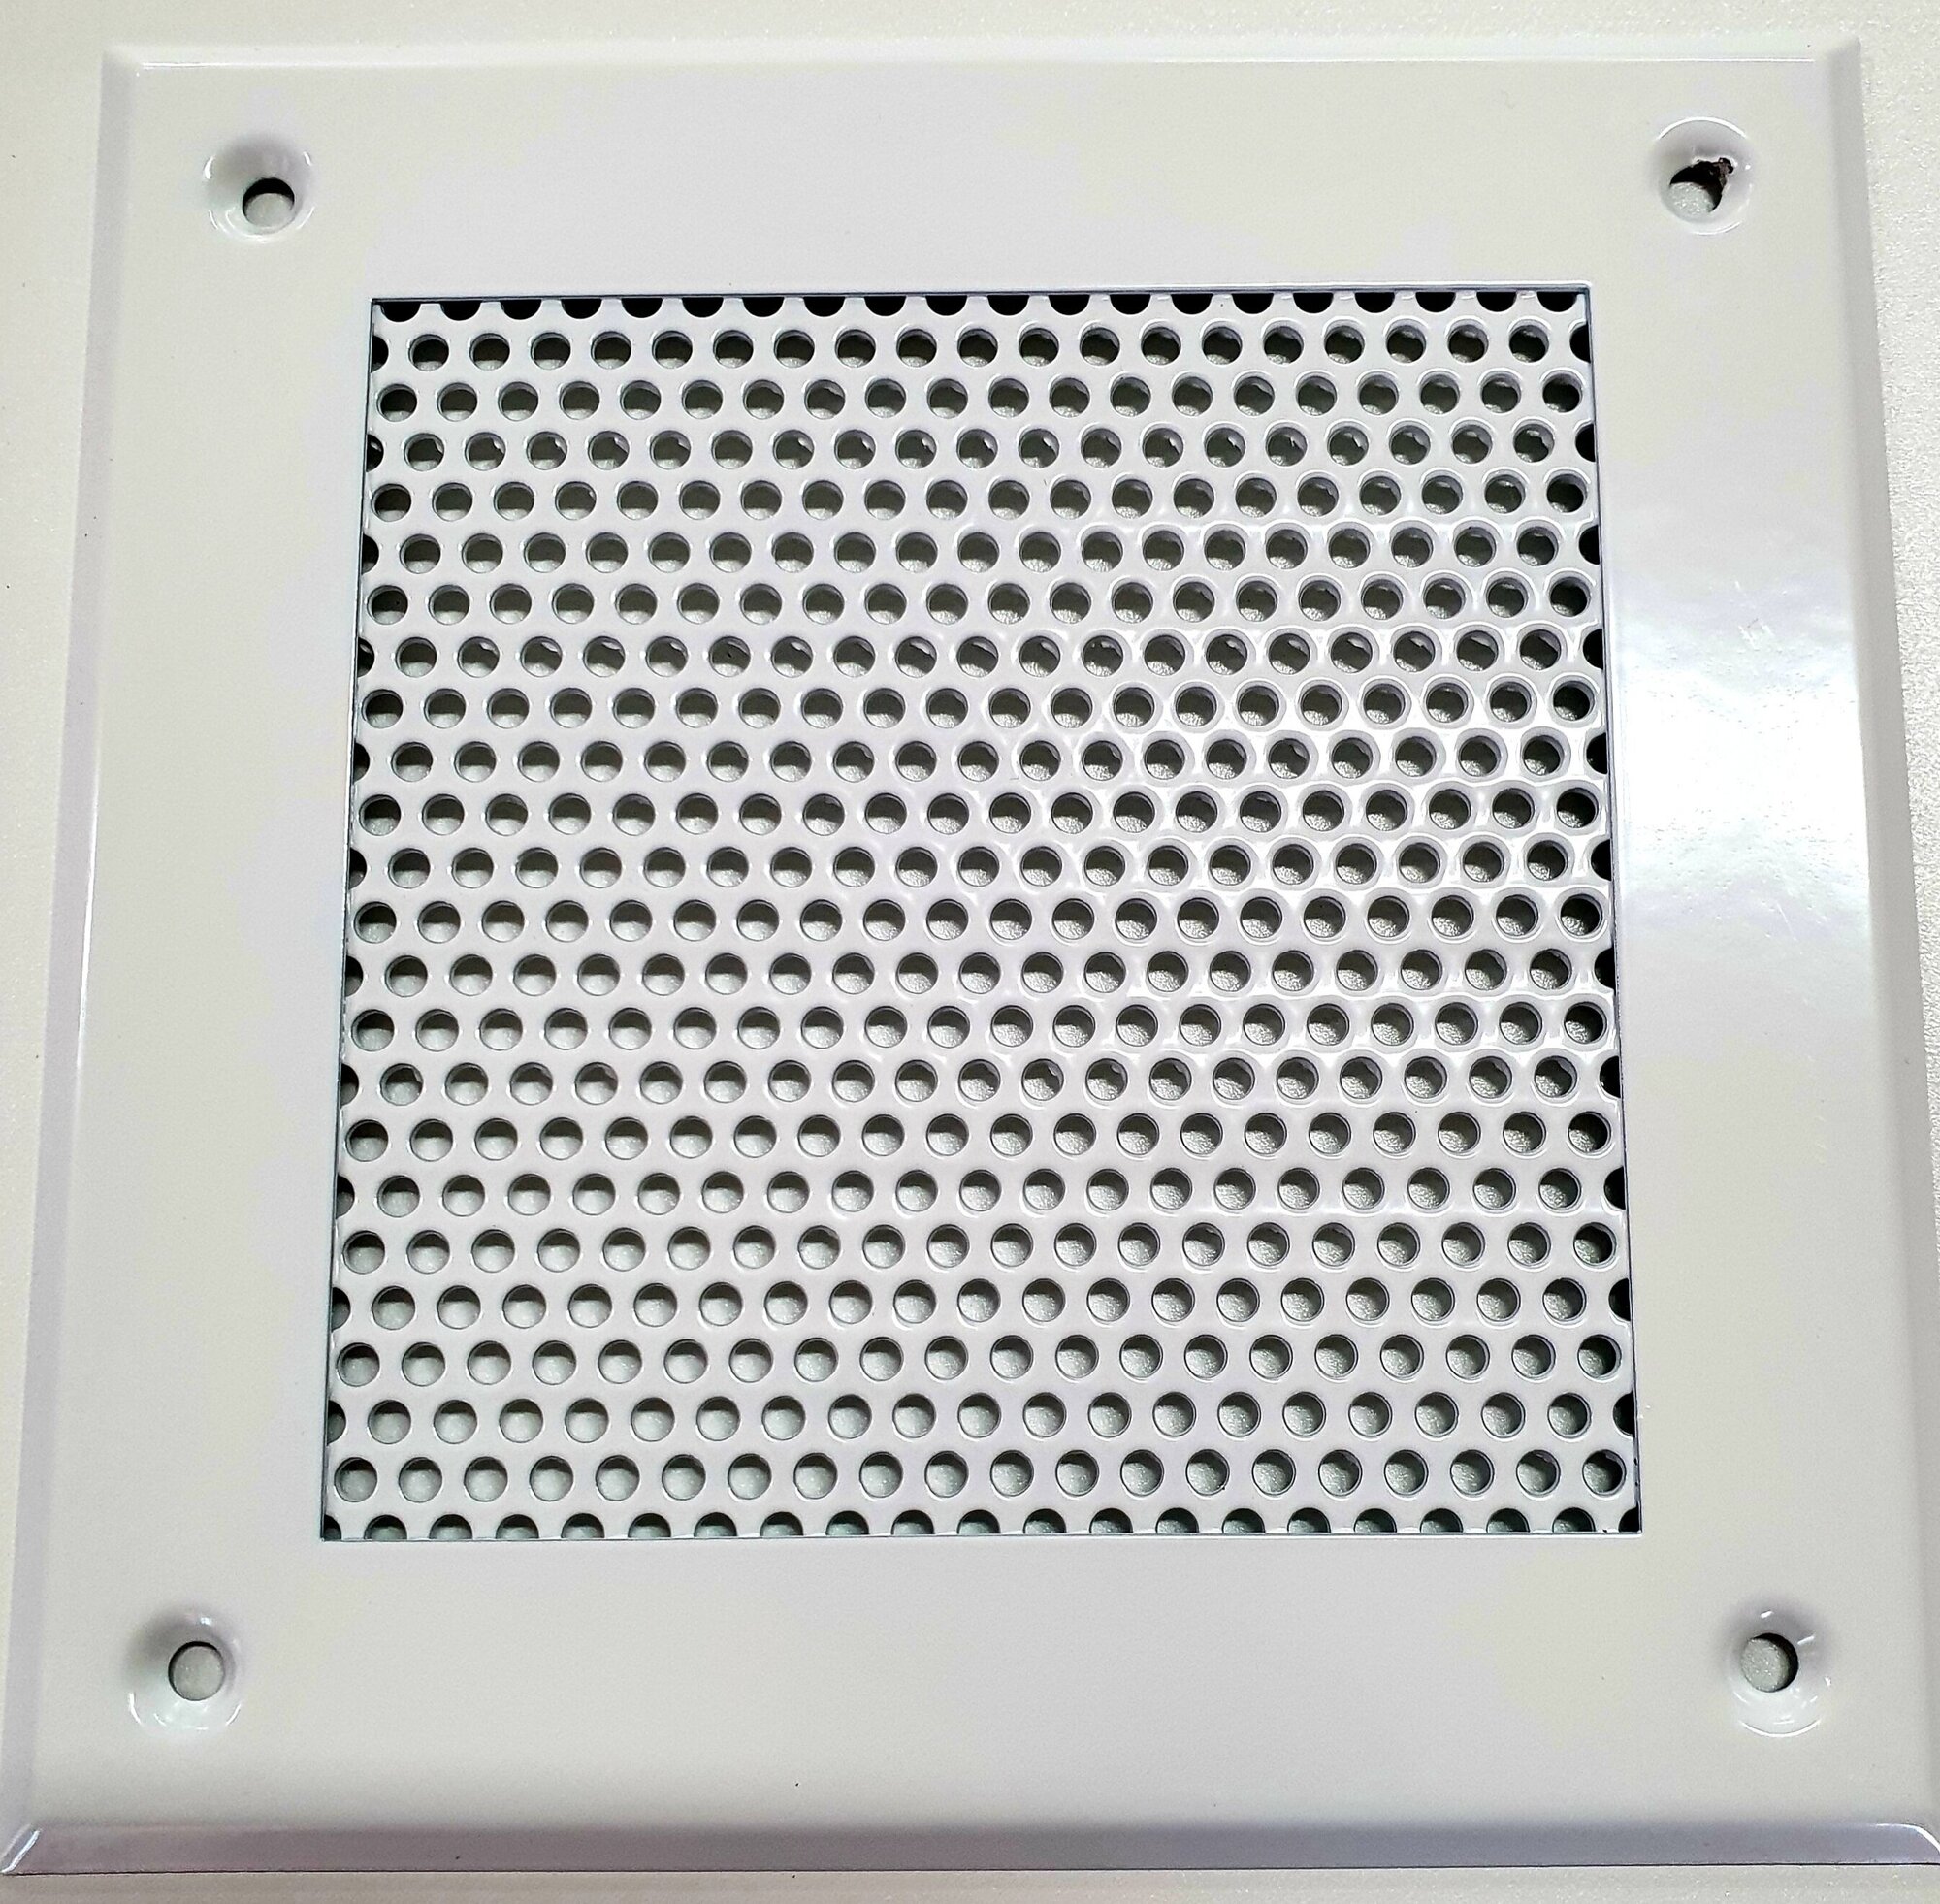 Вентиляционная решетка металлическая 200х200мм, тип перфорации кружок (Rv 3-5), цвет белый.